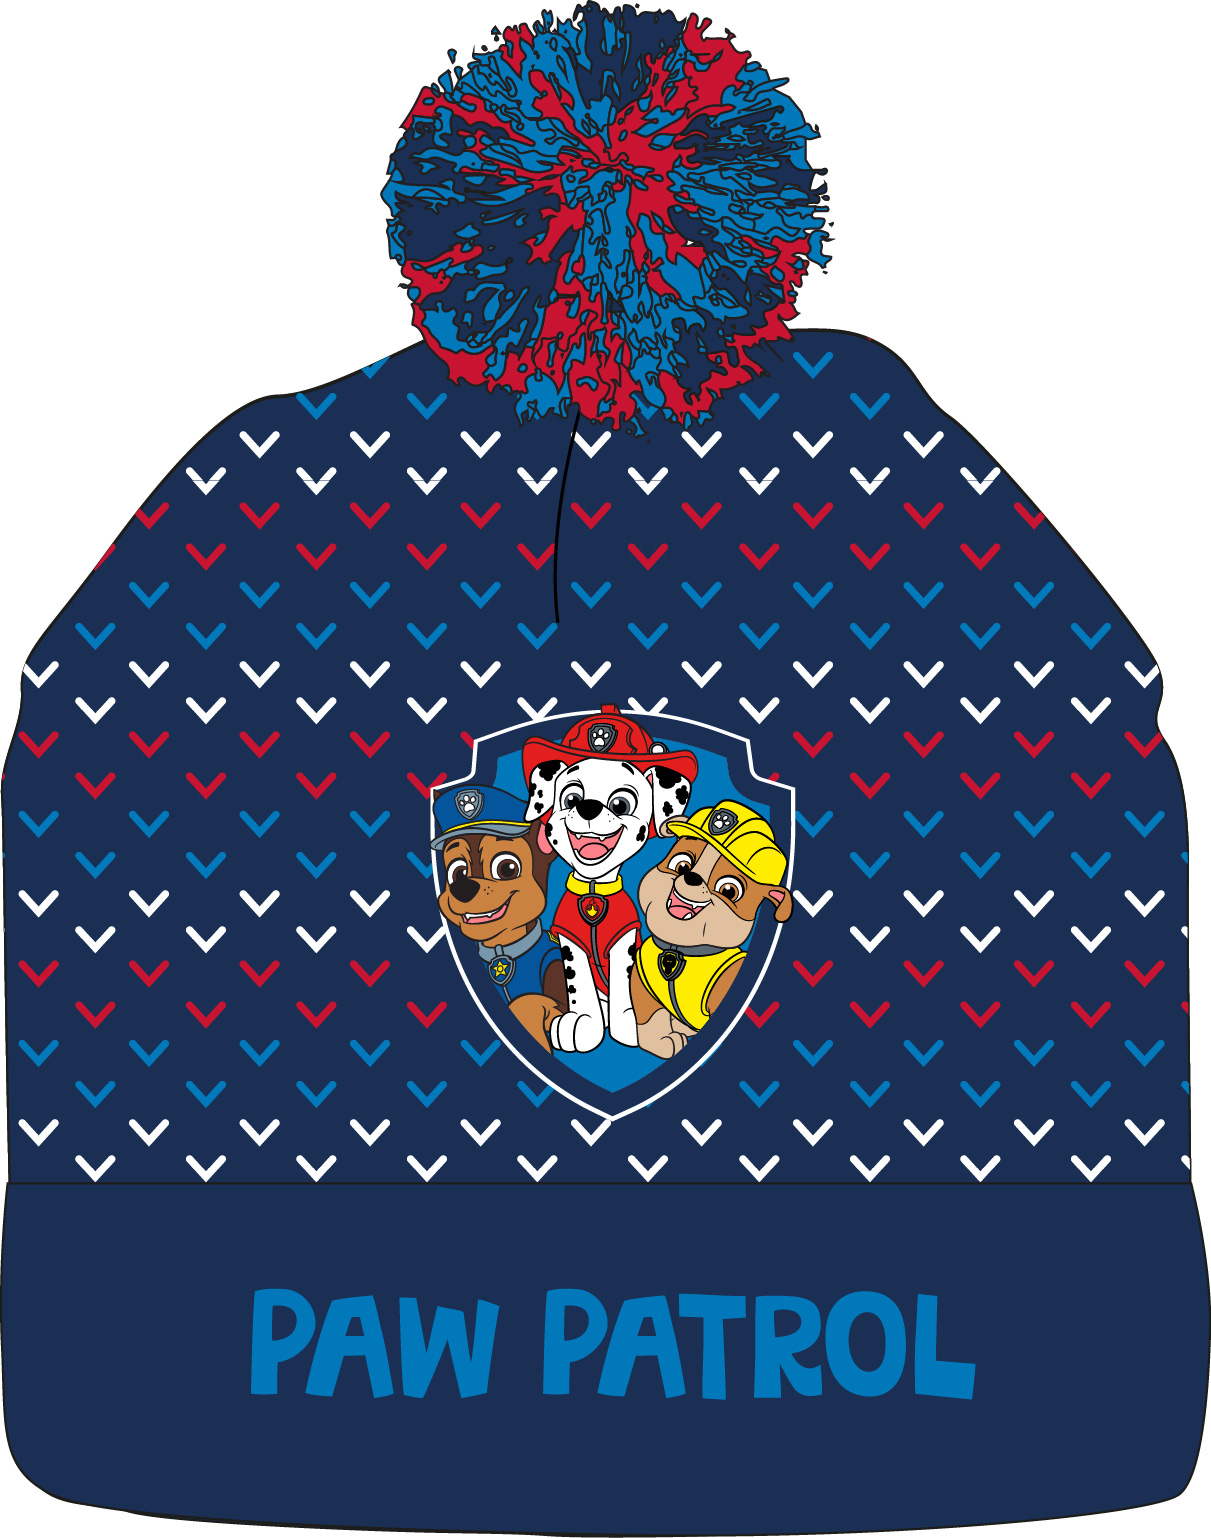 Paw Patrol - Tlapková patrola -Licence Chlapecká zimní čepice - Paw Patrol 52392423, tmavě modrá Barva: Modrá tmavě, Velikost: velikost 52